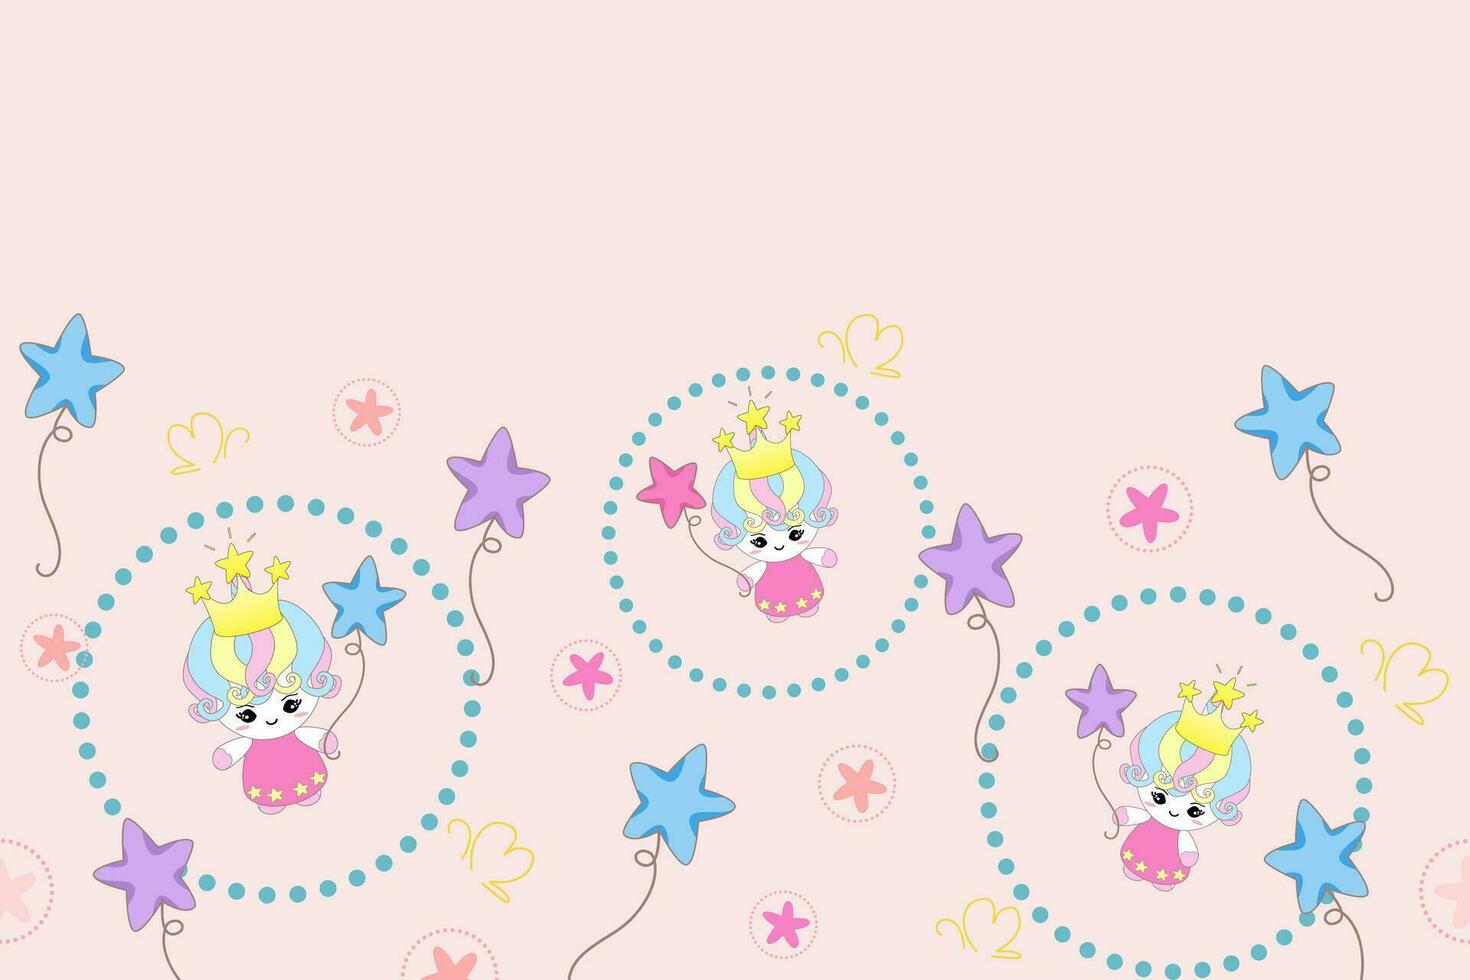 Principessa unicorno bambino con stella palloncini modello senza soluzione di continuità vettore illustrazione.